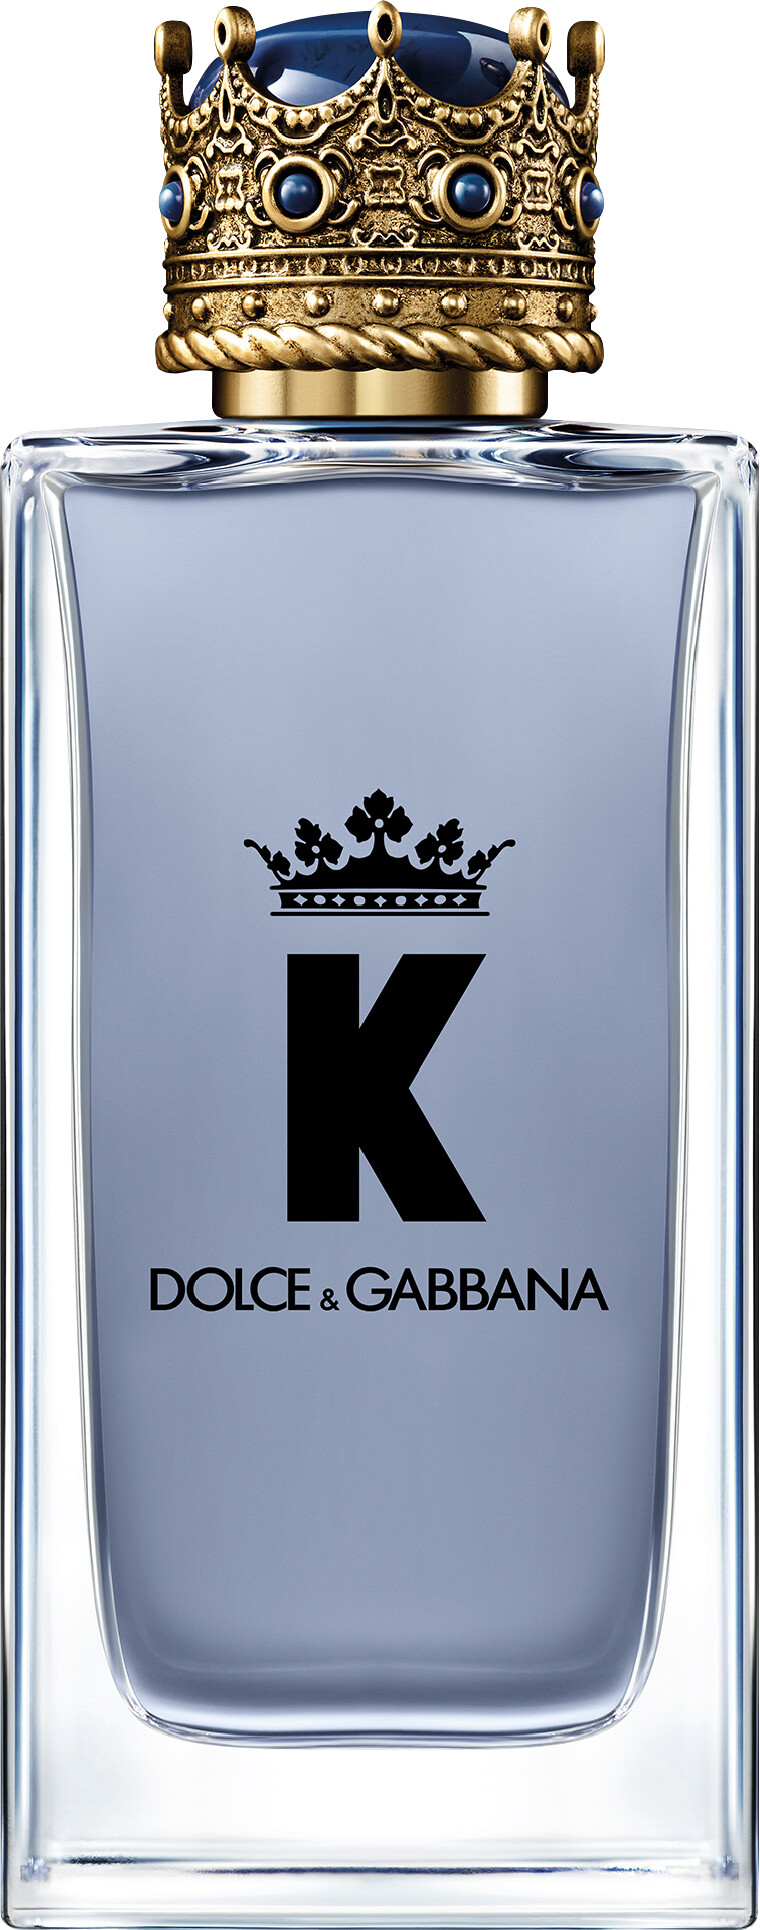 dolce and gabbana k 100ml